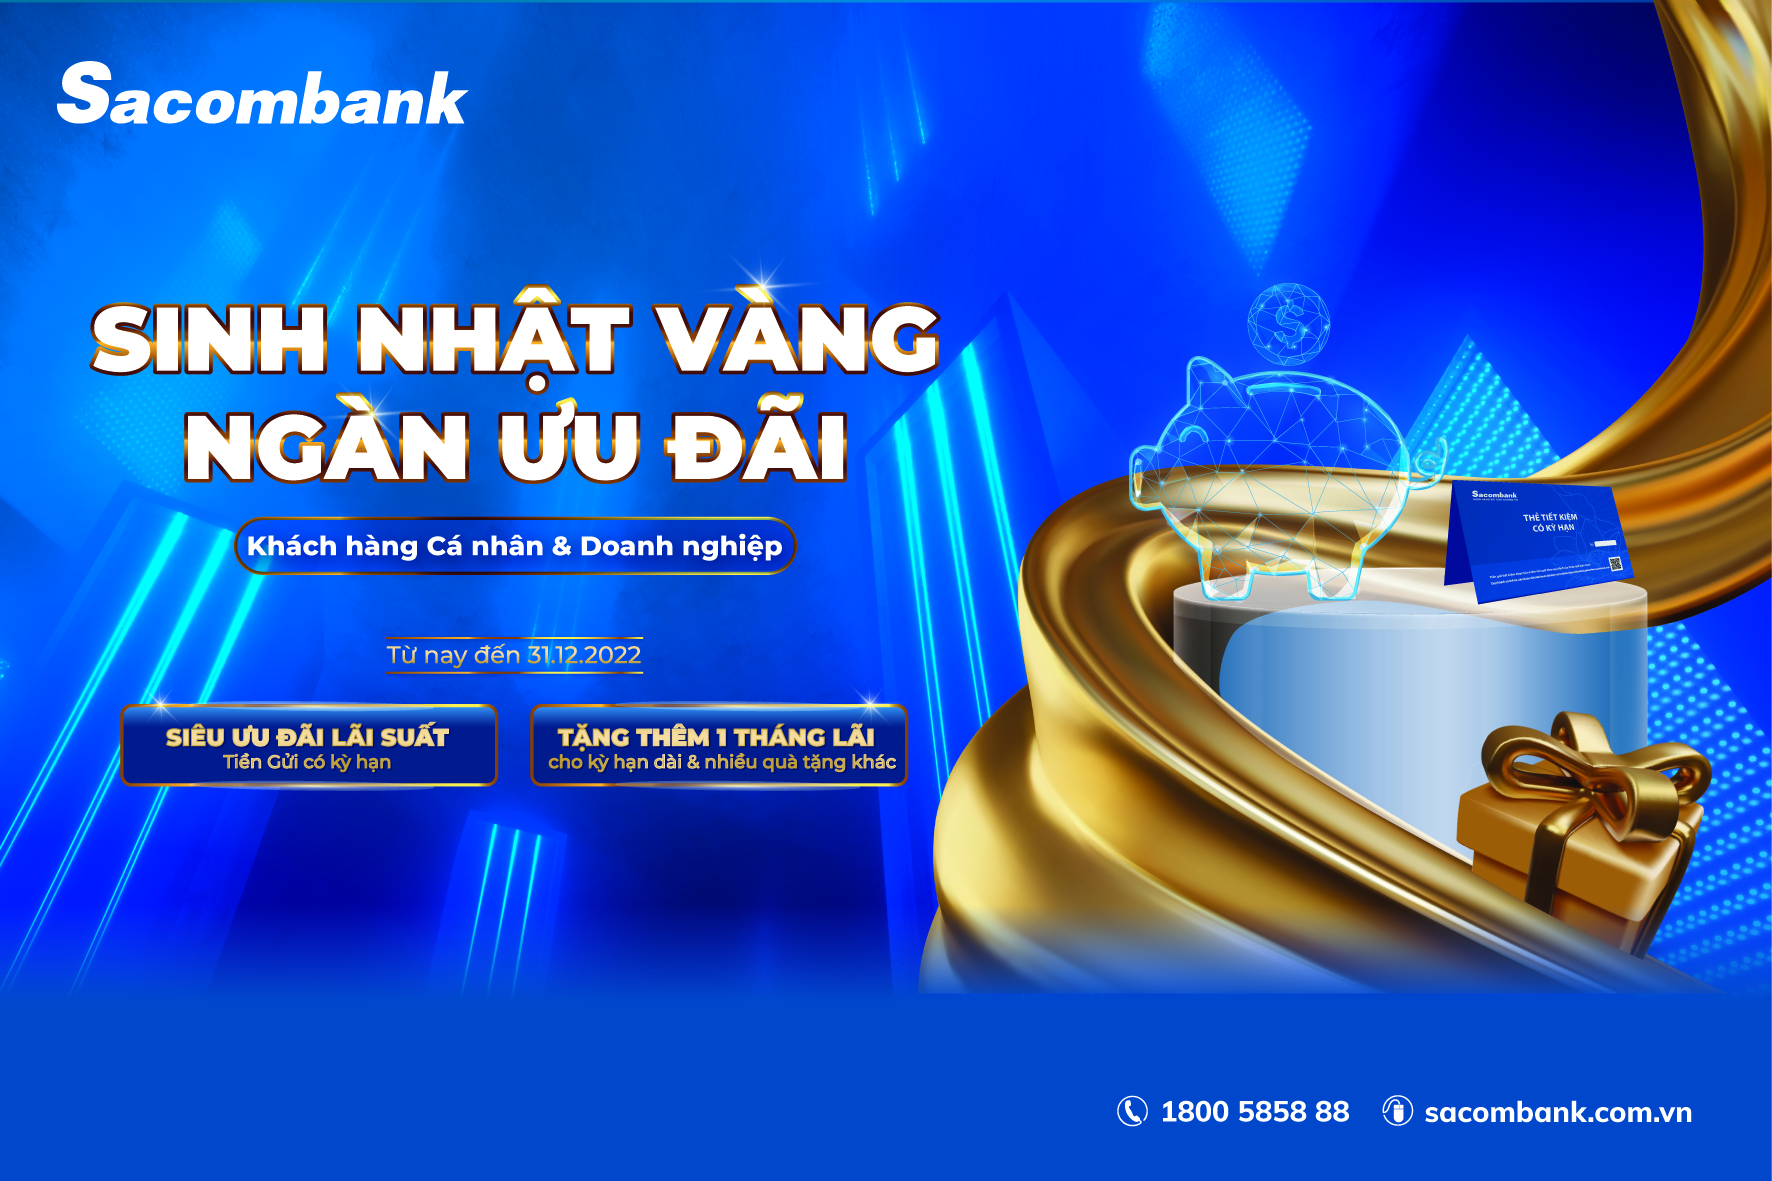 Cơ hội nhận thưởng ngay 1 tháng lãi suất khi tham gia gửi tiền có kỳ hạn tại Sacombank - Ảnh 1.